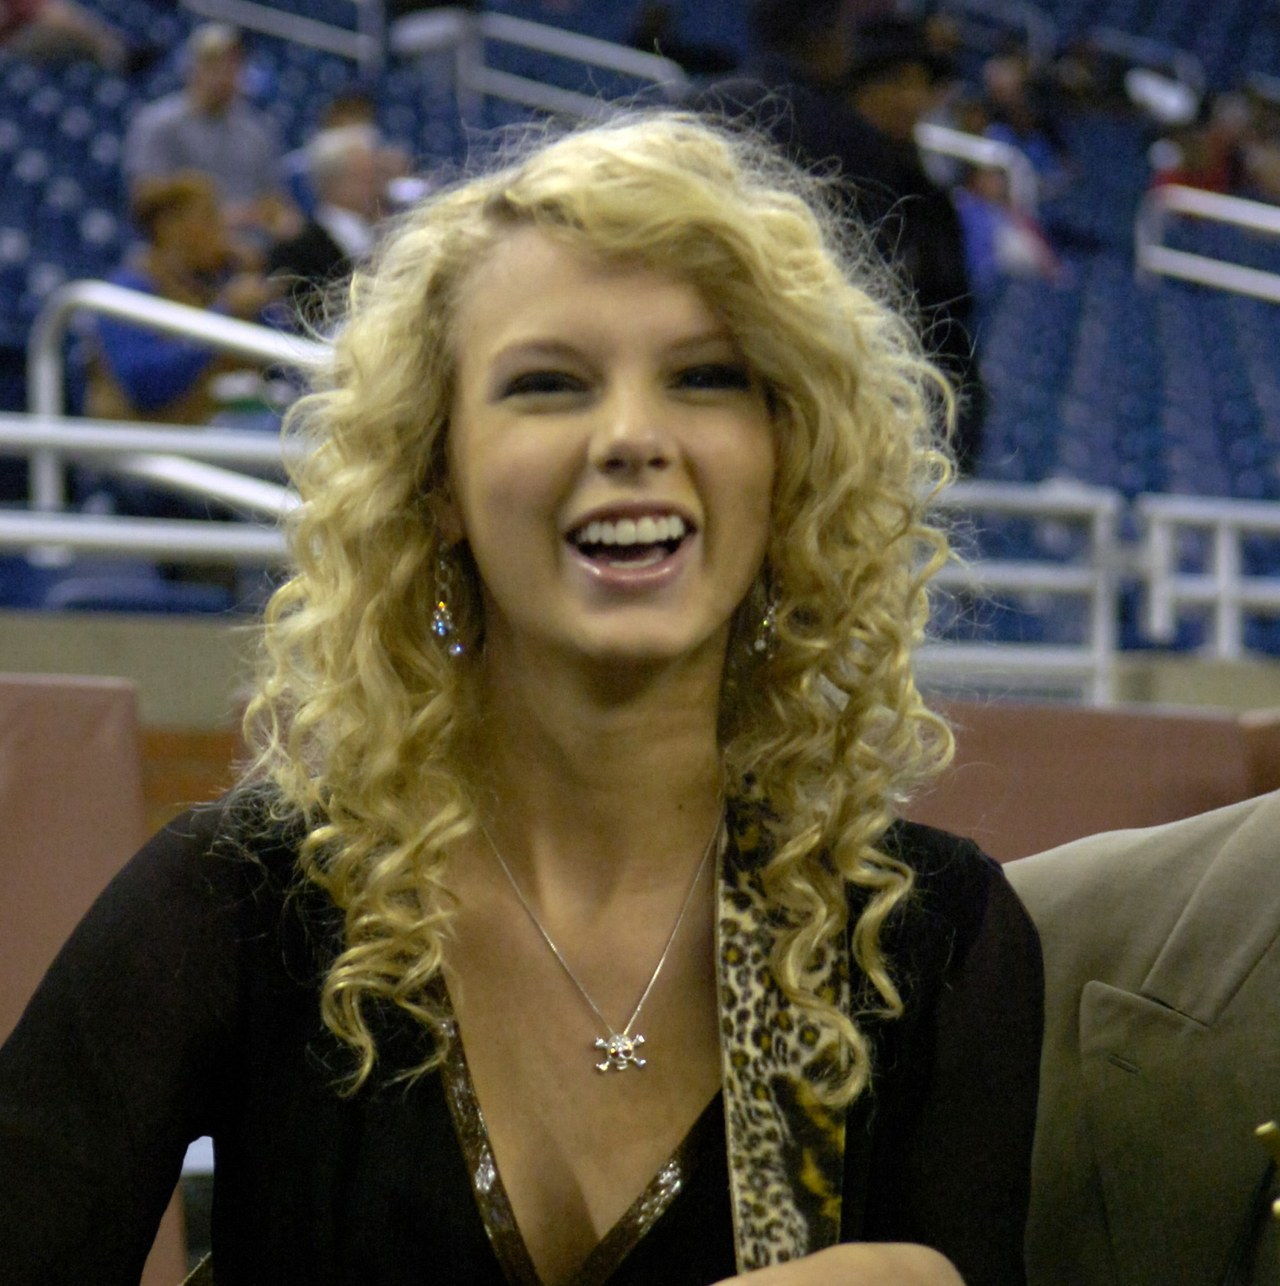 泰勒 Swift sings the National Anthem as the Detroit Lions host the Miami Dolphins in a Thanksgiving Day game Nov. 23, 2006 in Detroit.